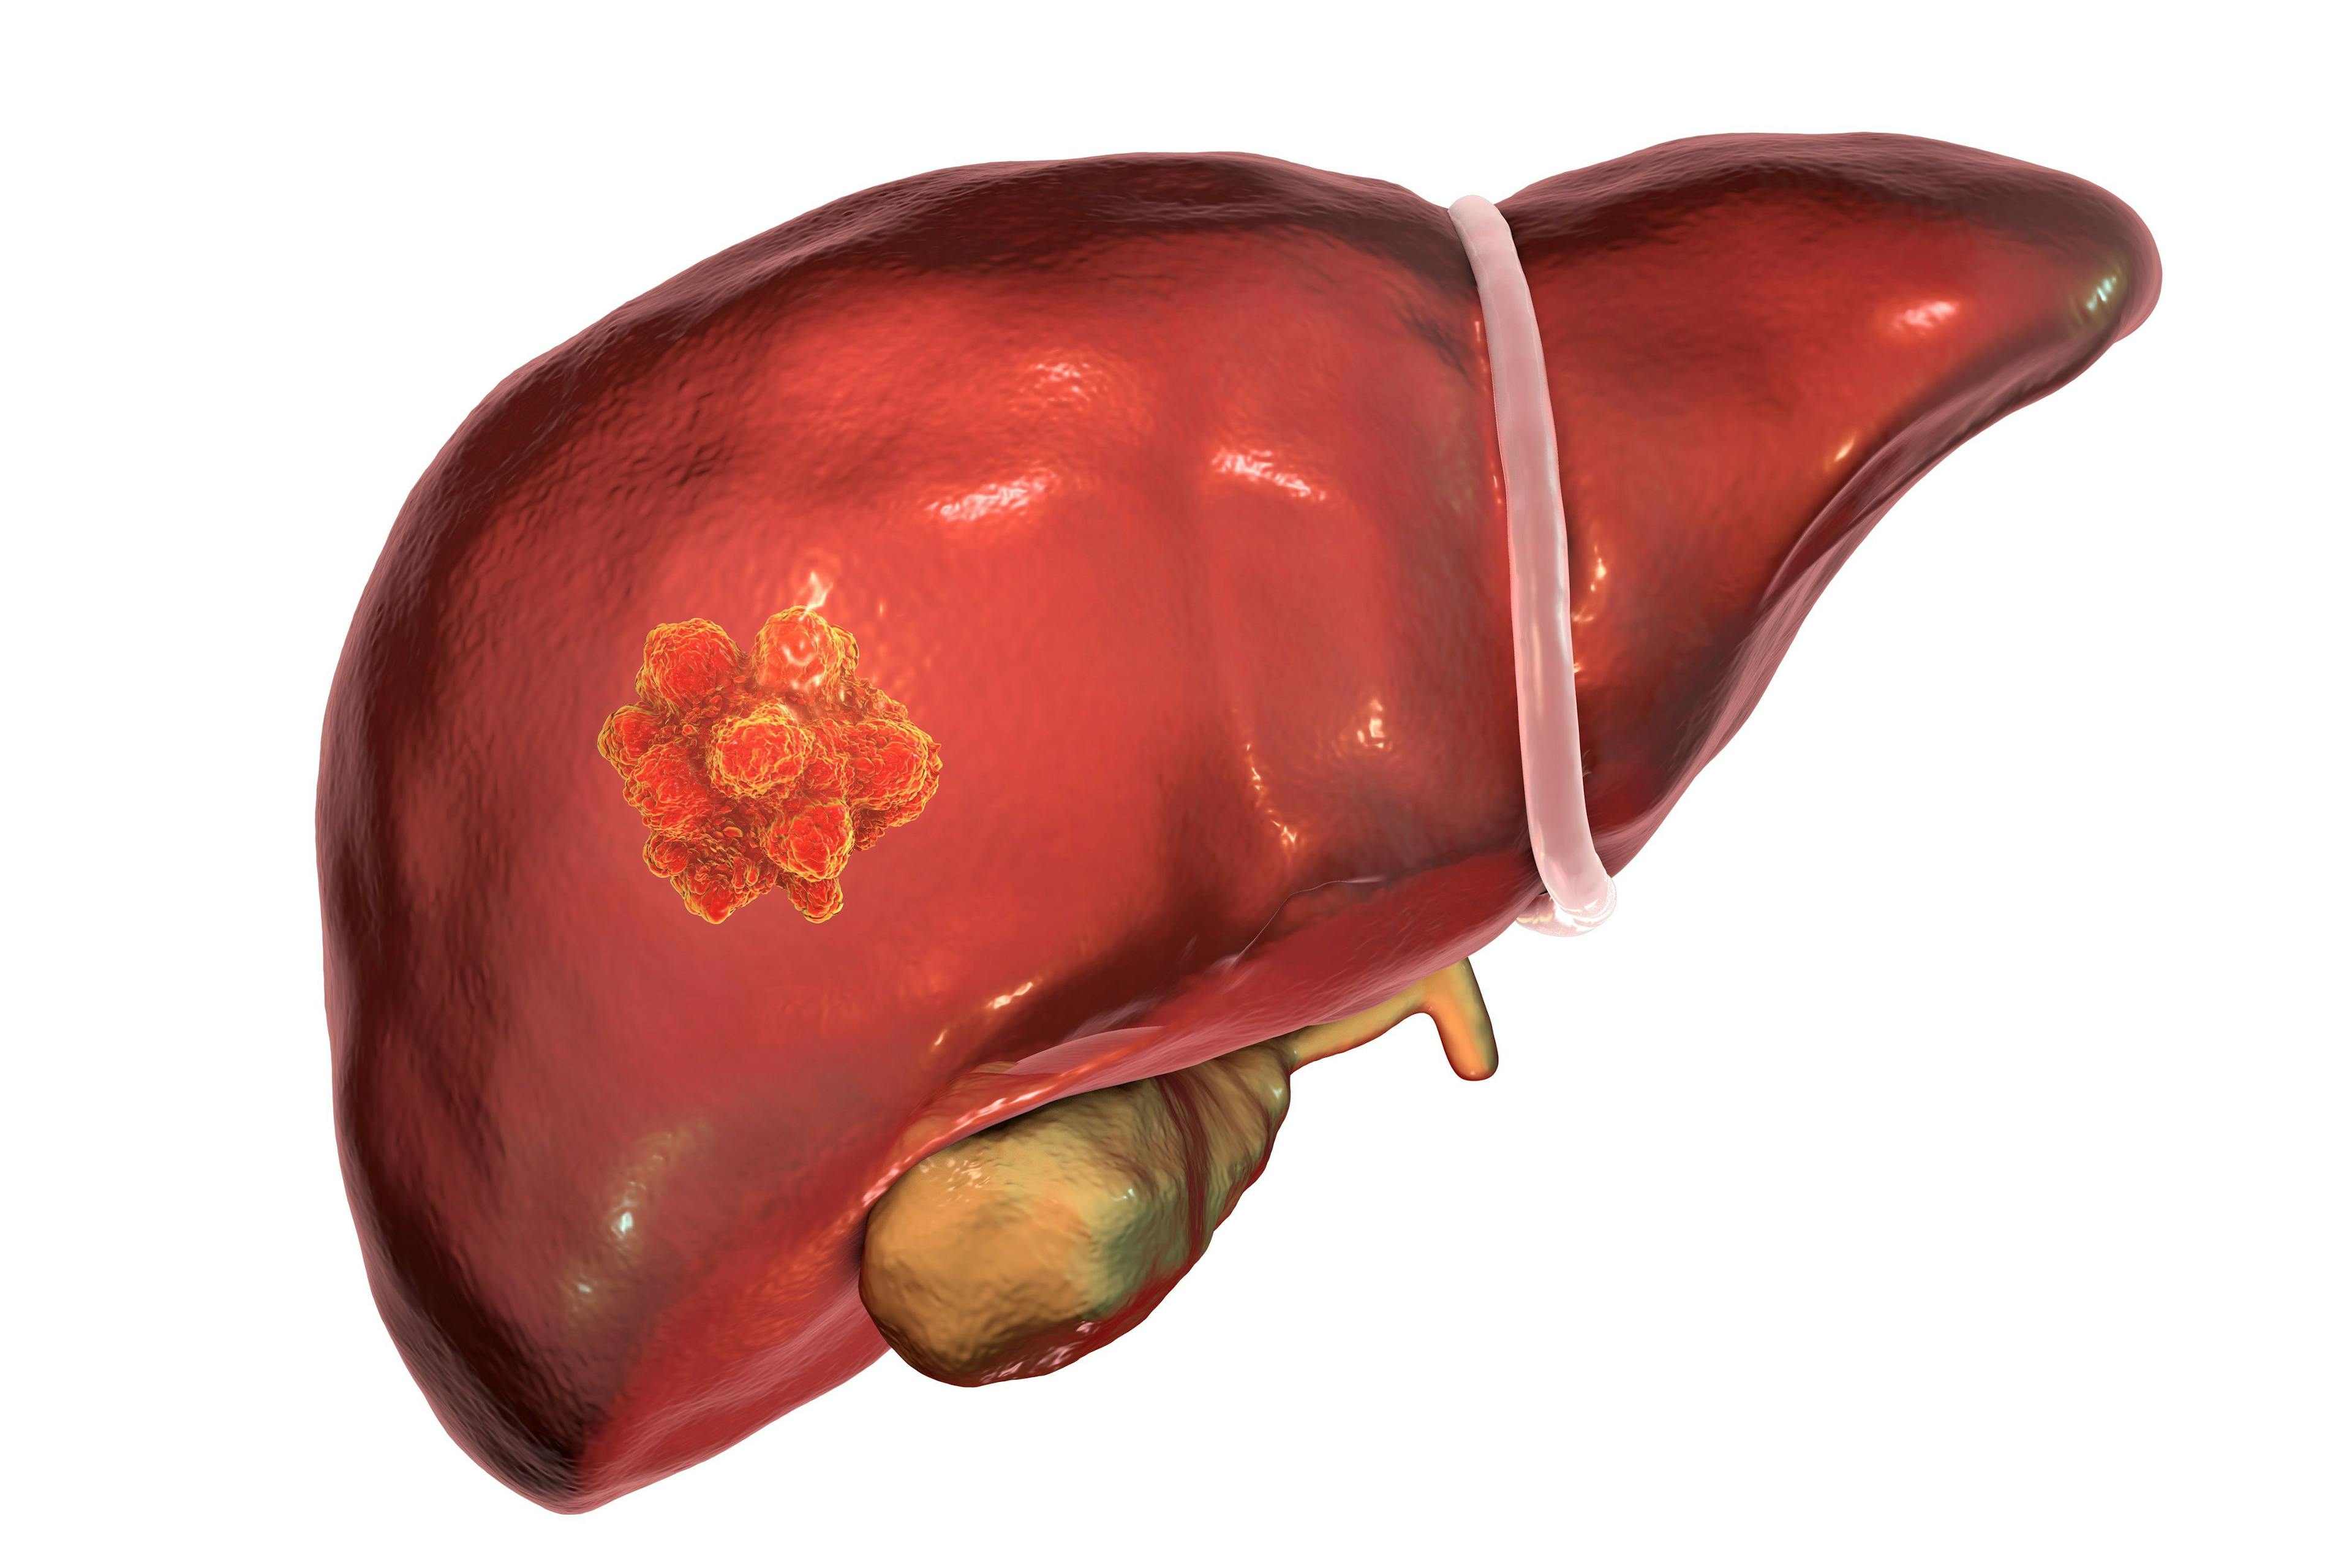  Liver cancer. 3D illustration showing presence of tumor inside liver | Image Credit: © Dr_Microbe - stock.adobe.co